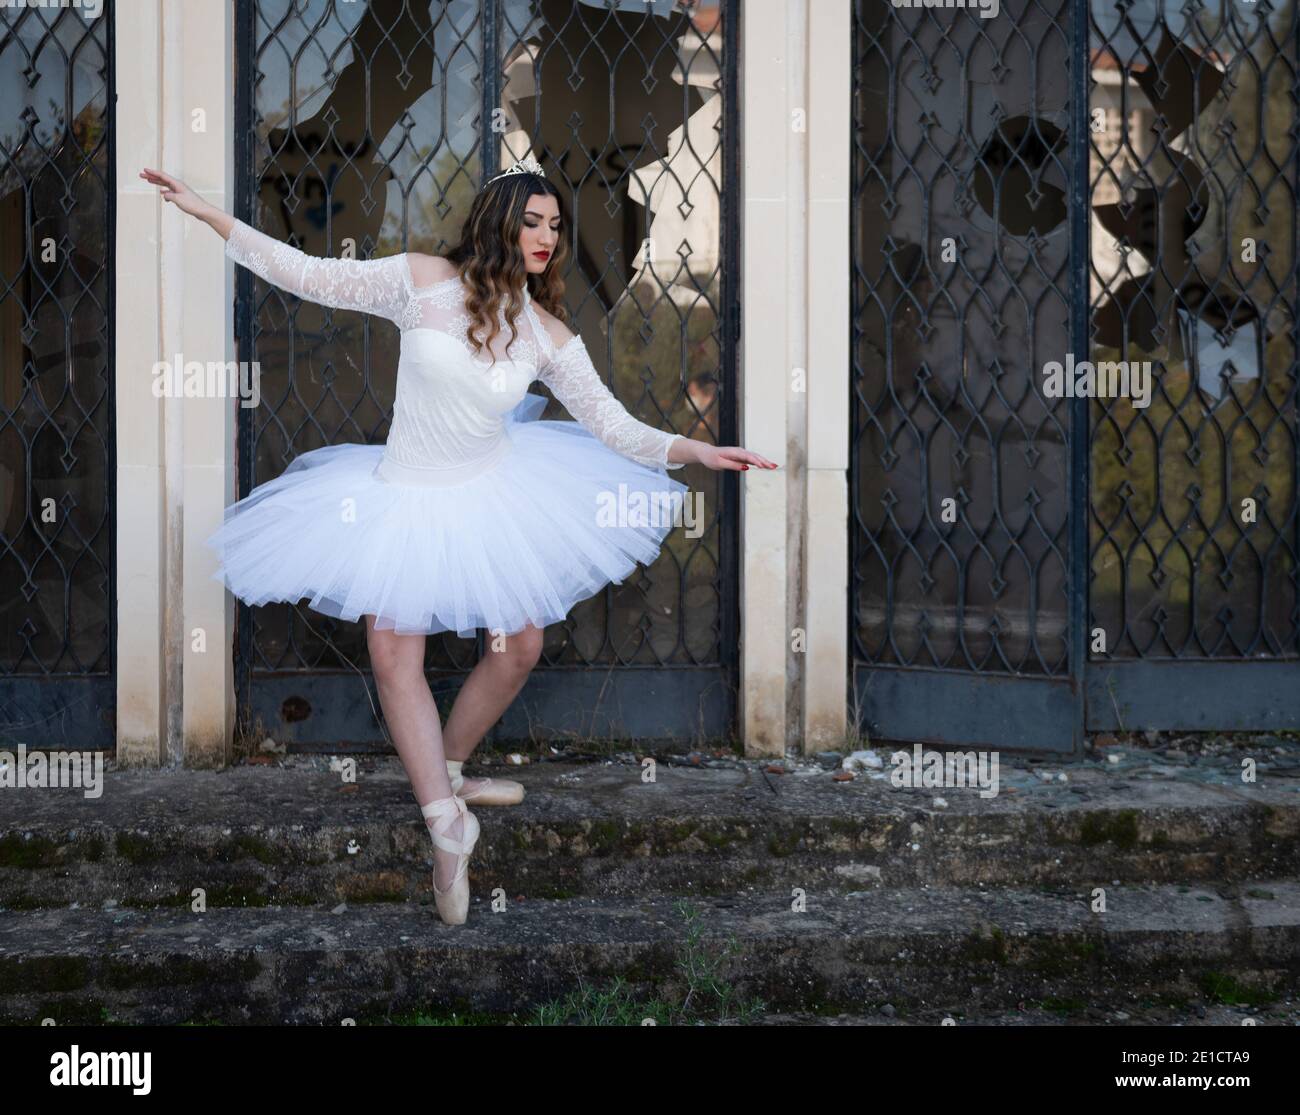 Ragazza ballerina adolescente che indossa abiti bianchi e scarpe da ballo punta fuori di una casa abbandonata Foto Stock